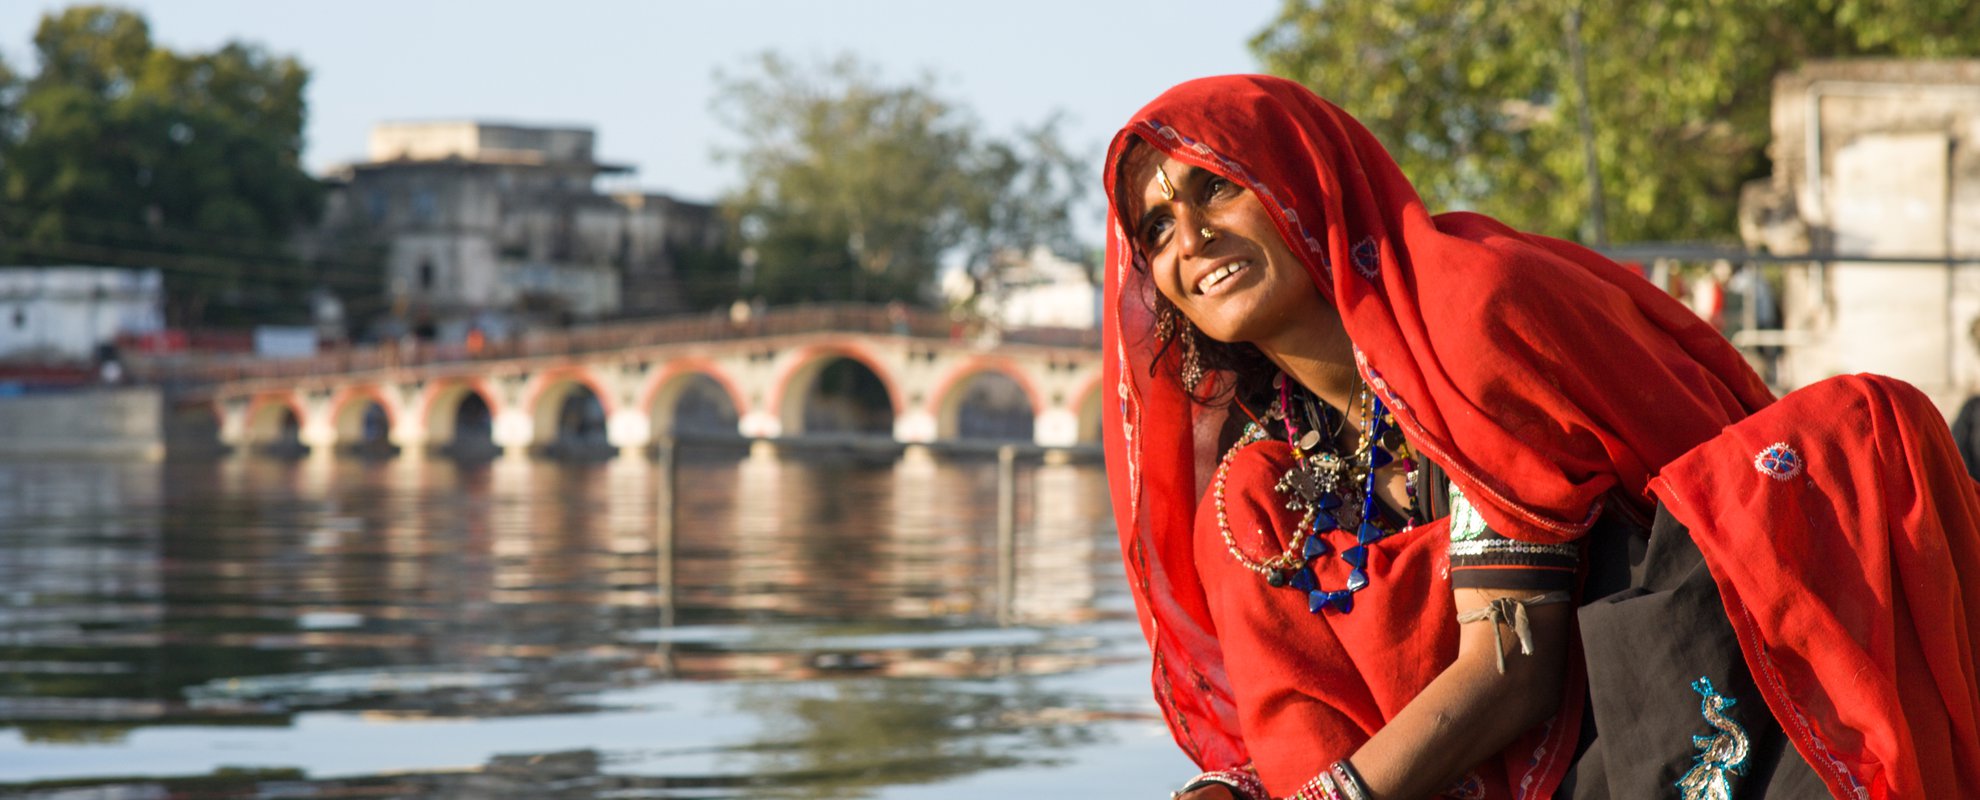 Det finns gott om heliga floder i Indien